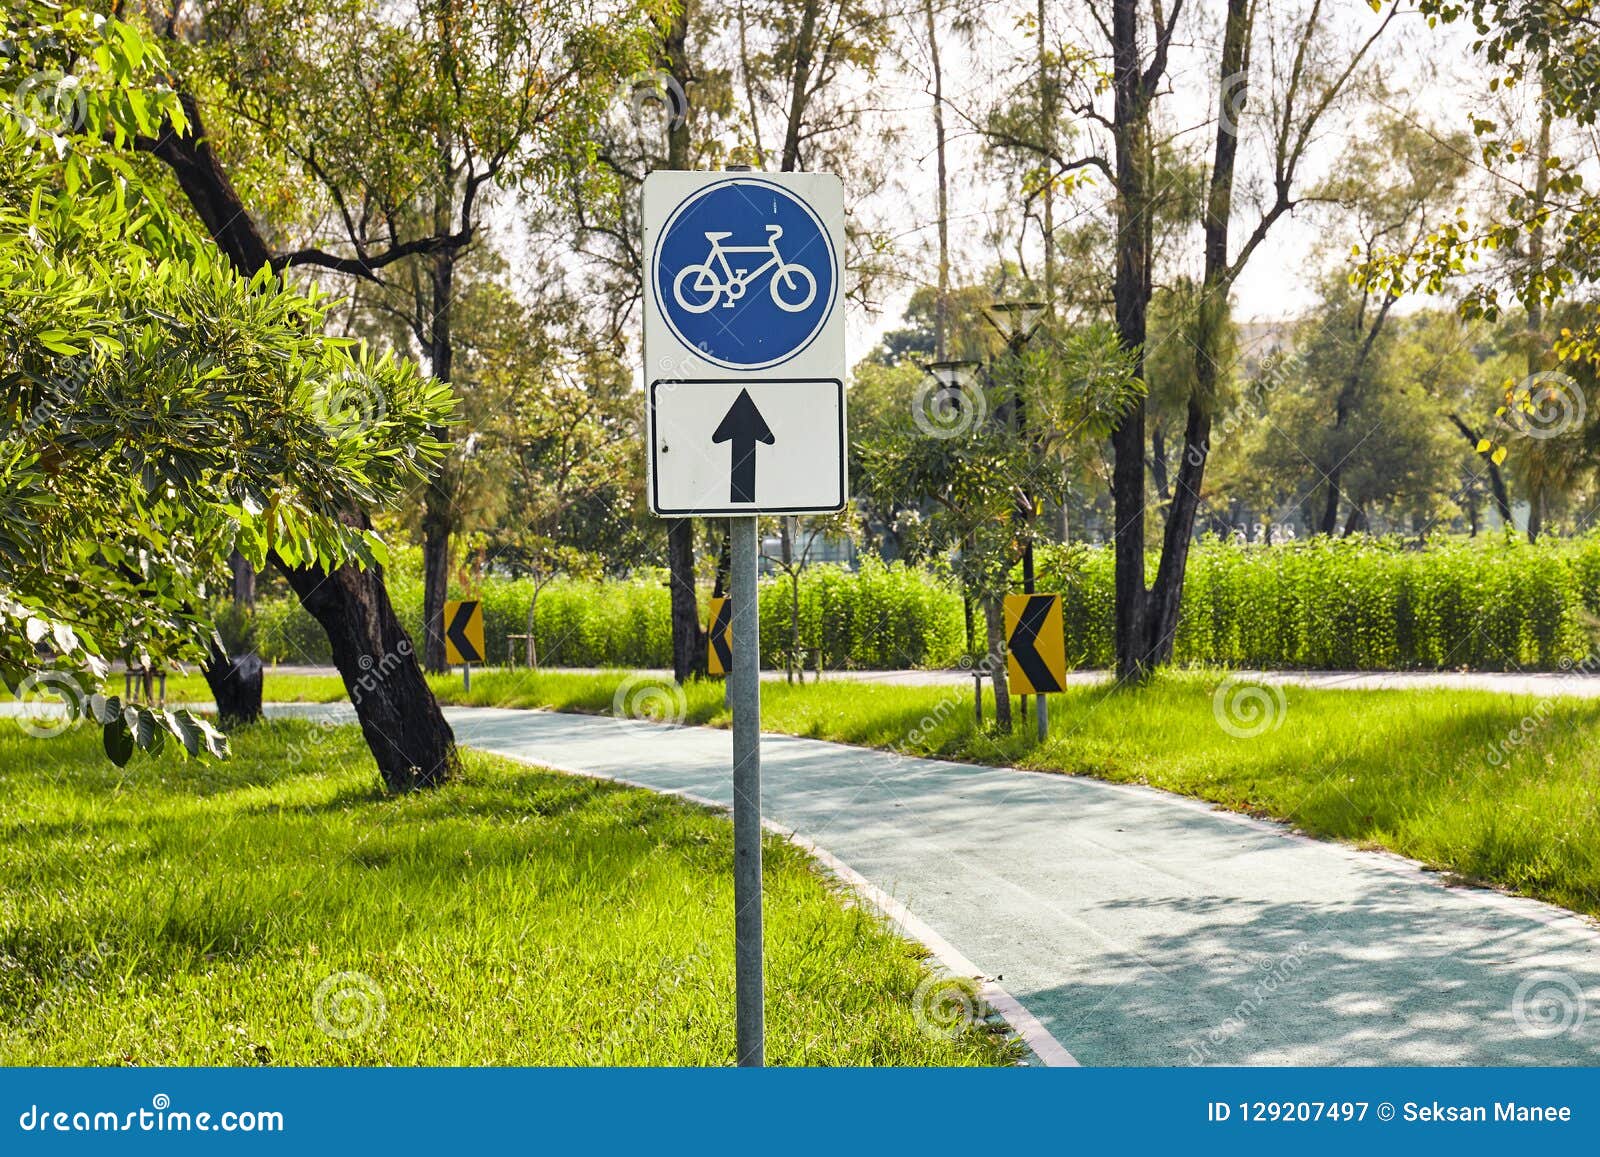 Велосипедная дорожка возраст. Велосипедная дорожка. Велосипедная дорожка со знаком. Дорожный знак велодорожка. Знаки для велосипедистов в парке.